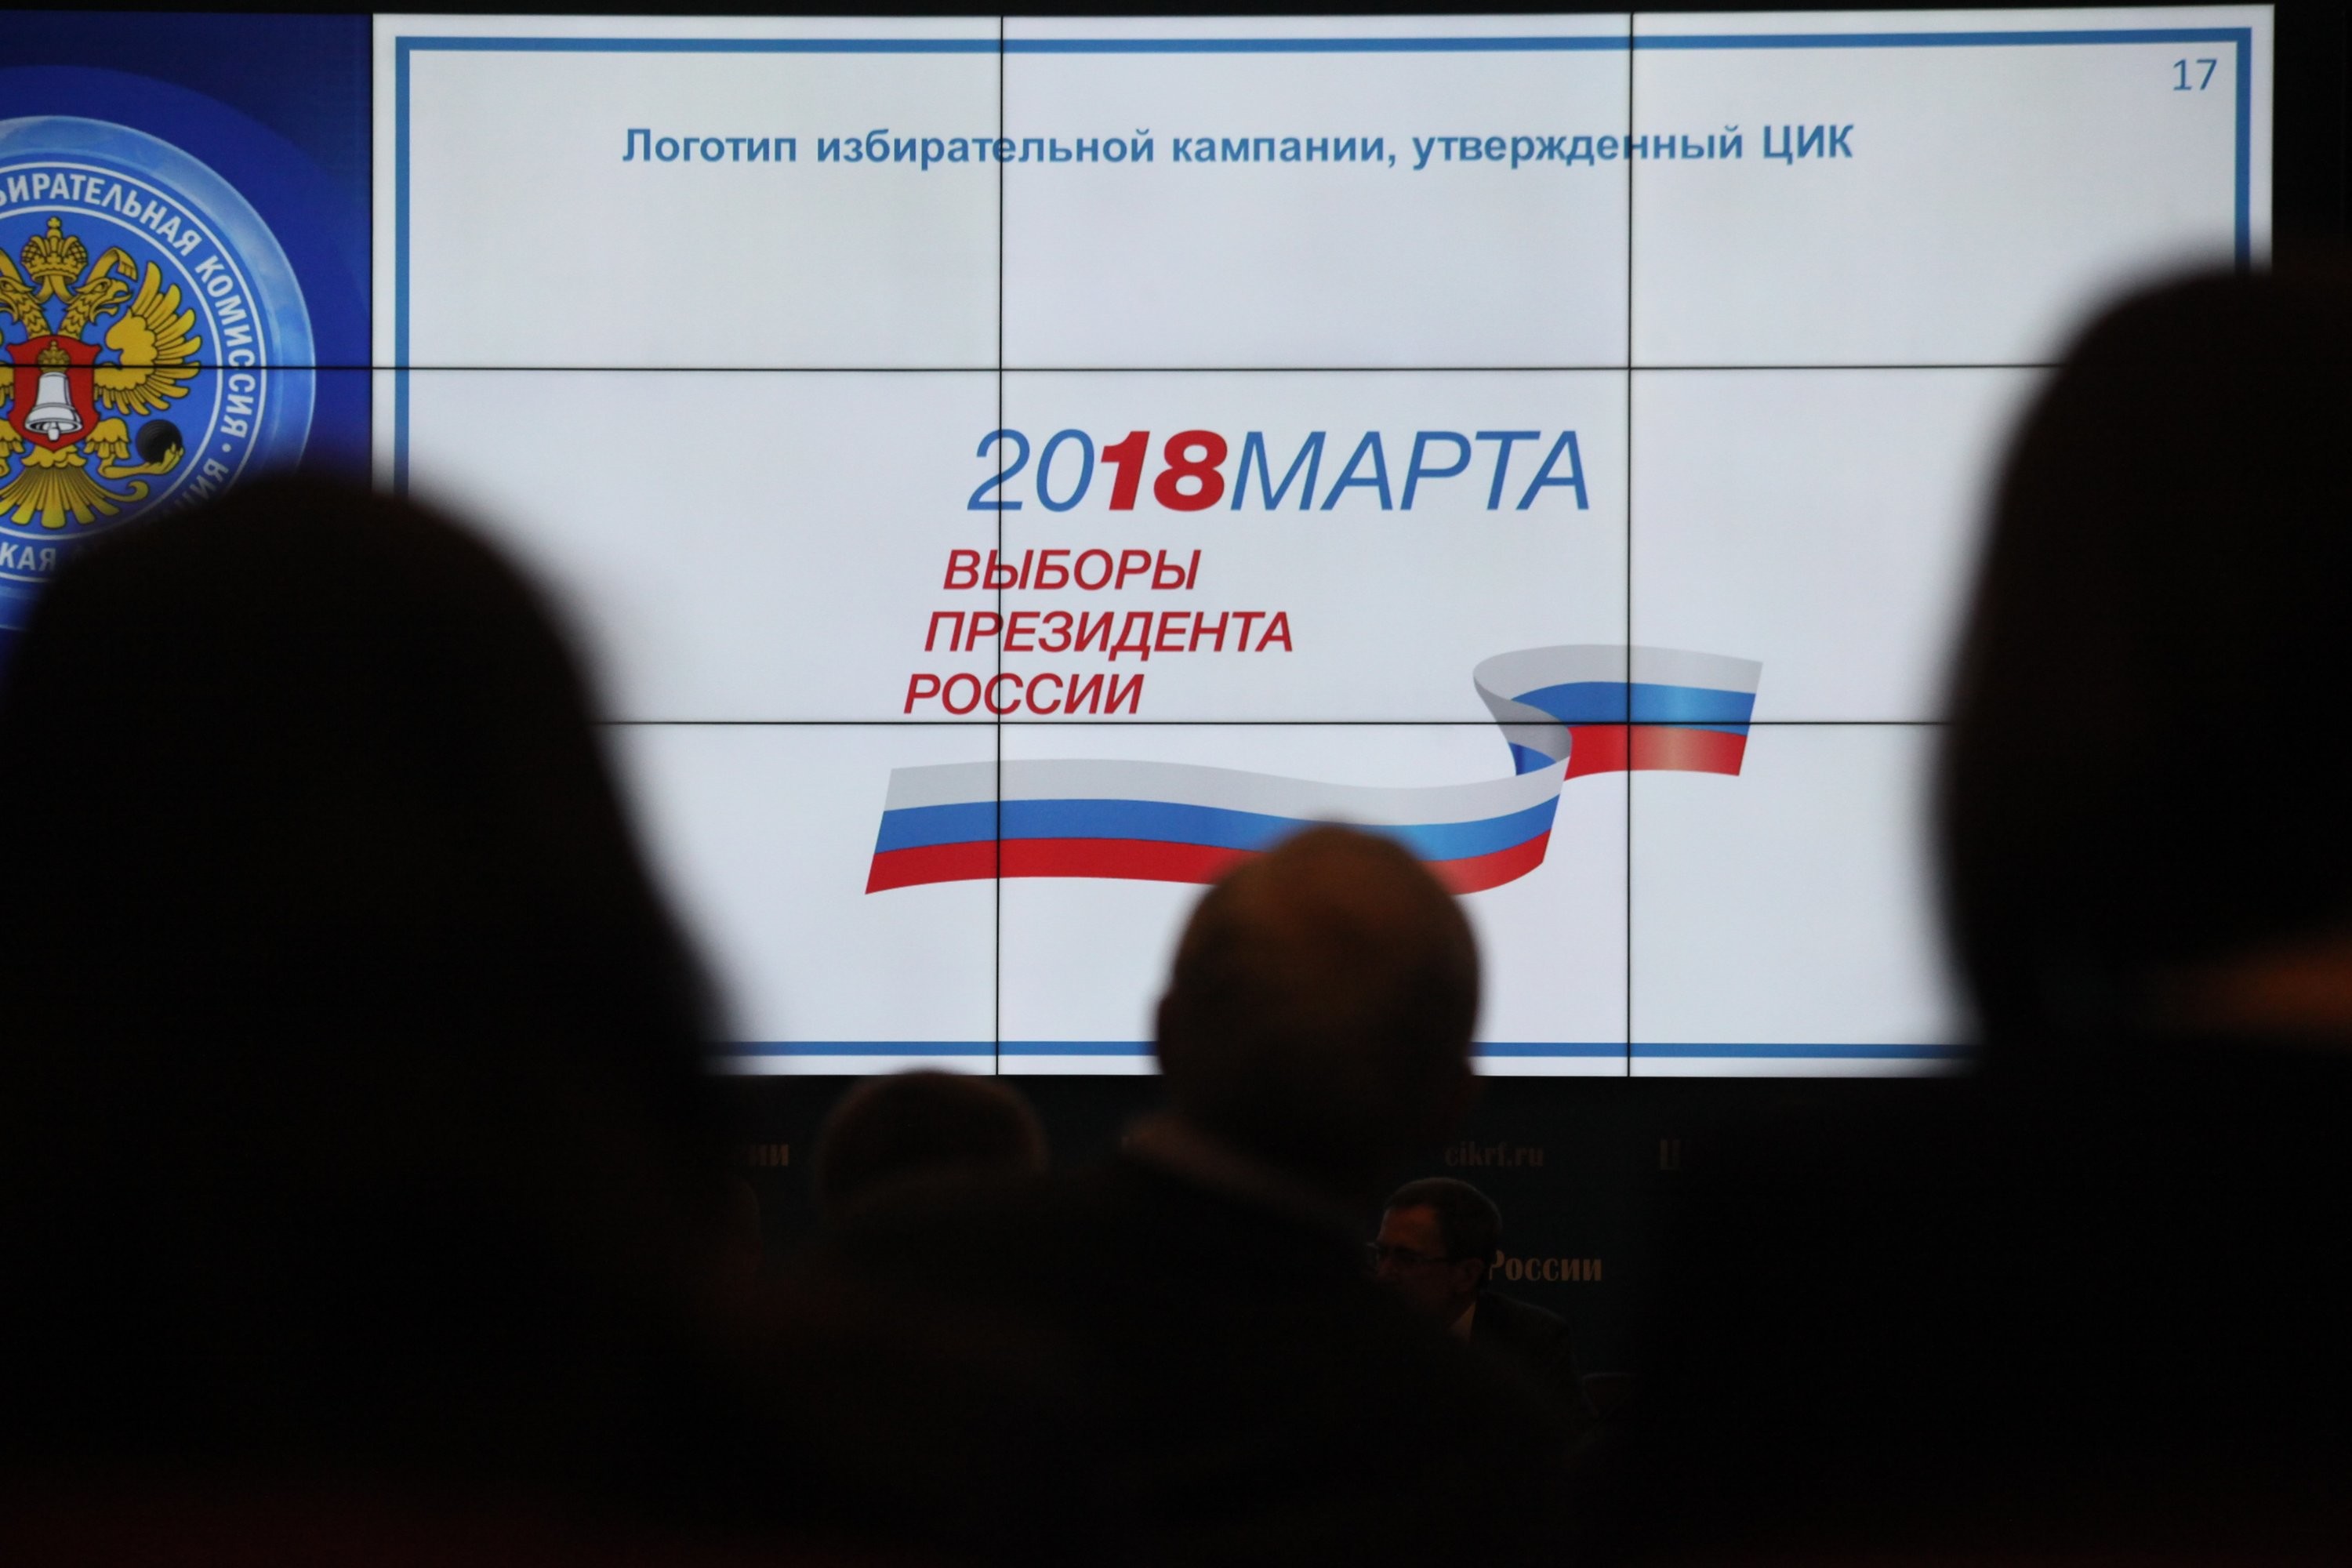 Граждане РФ смогут принять участие в выборах своего Президента в Гомеле